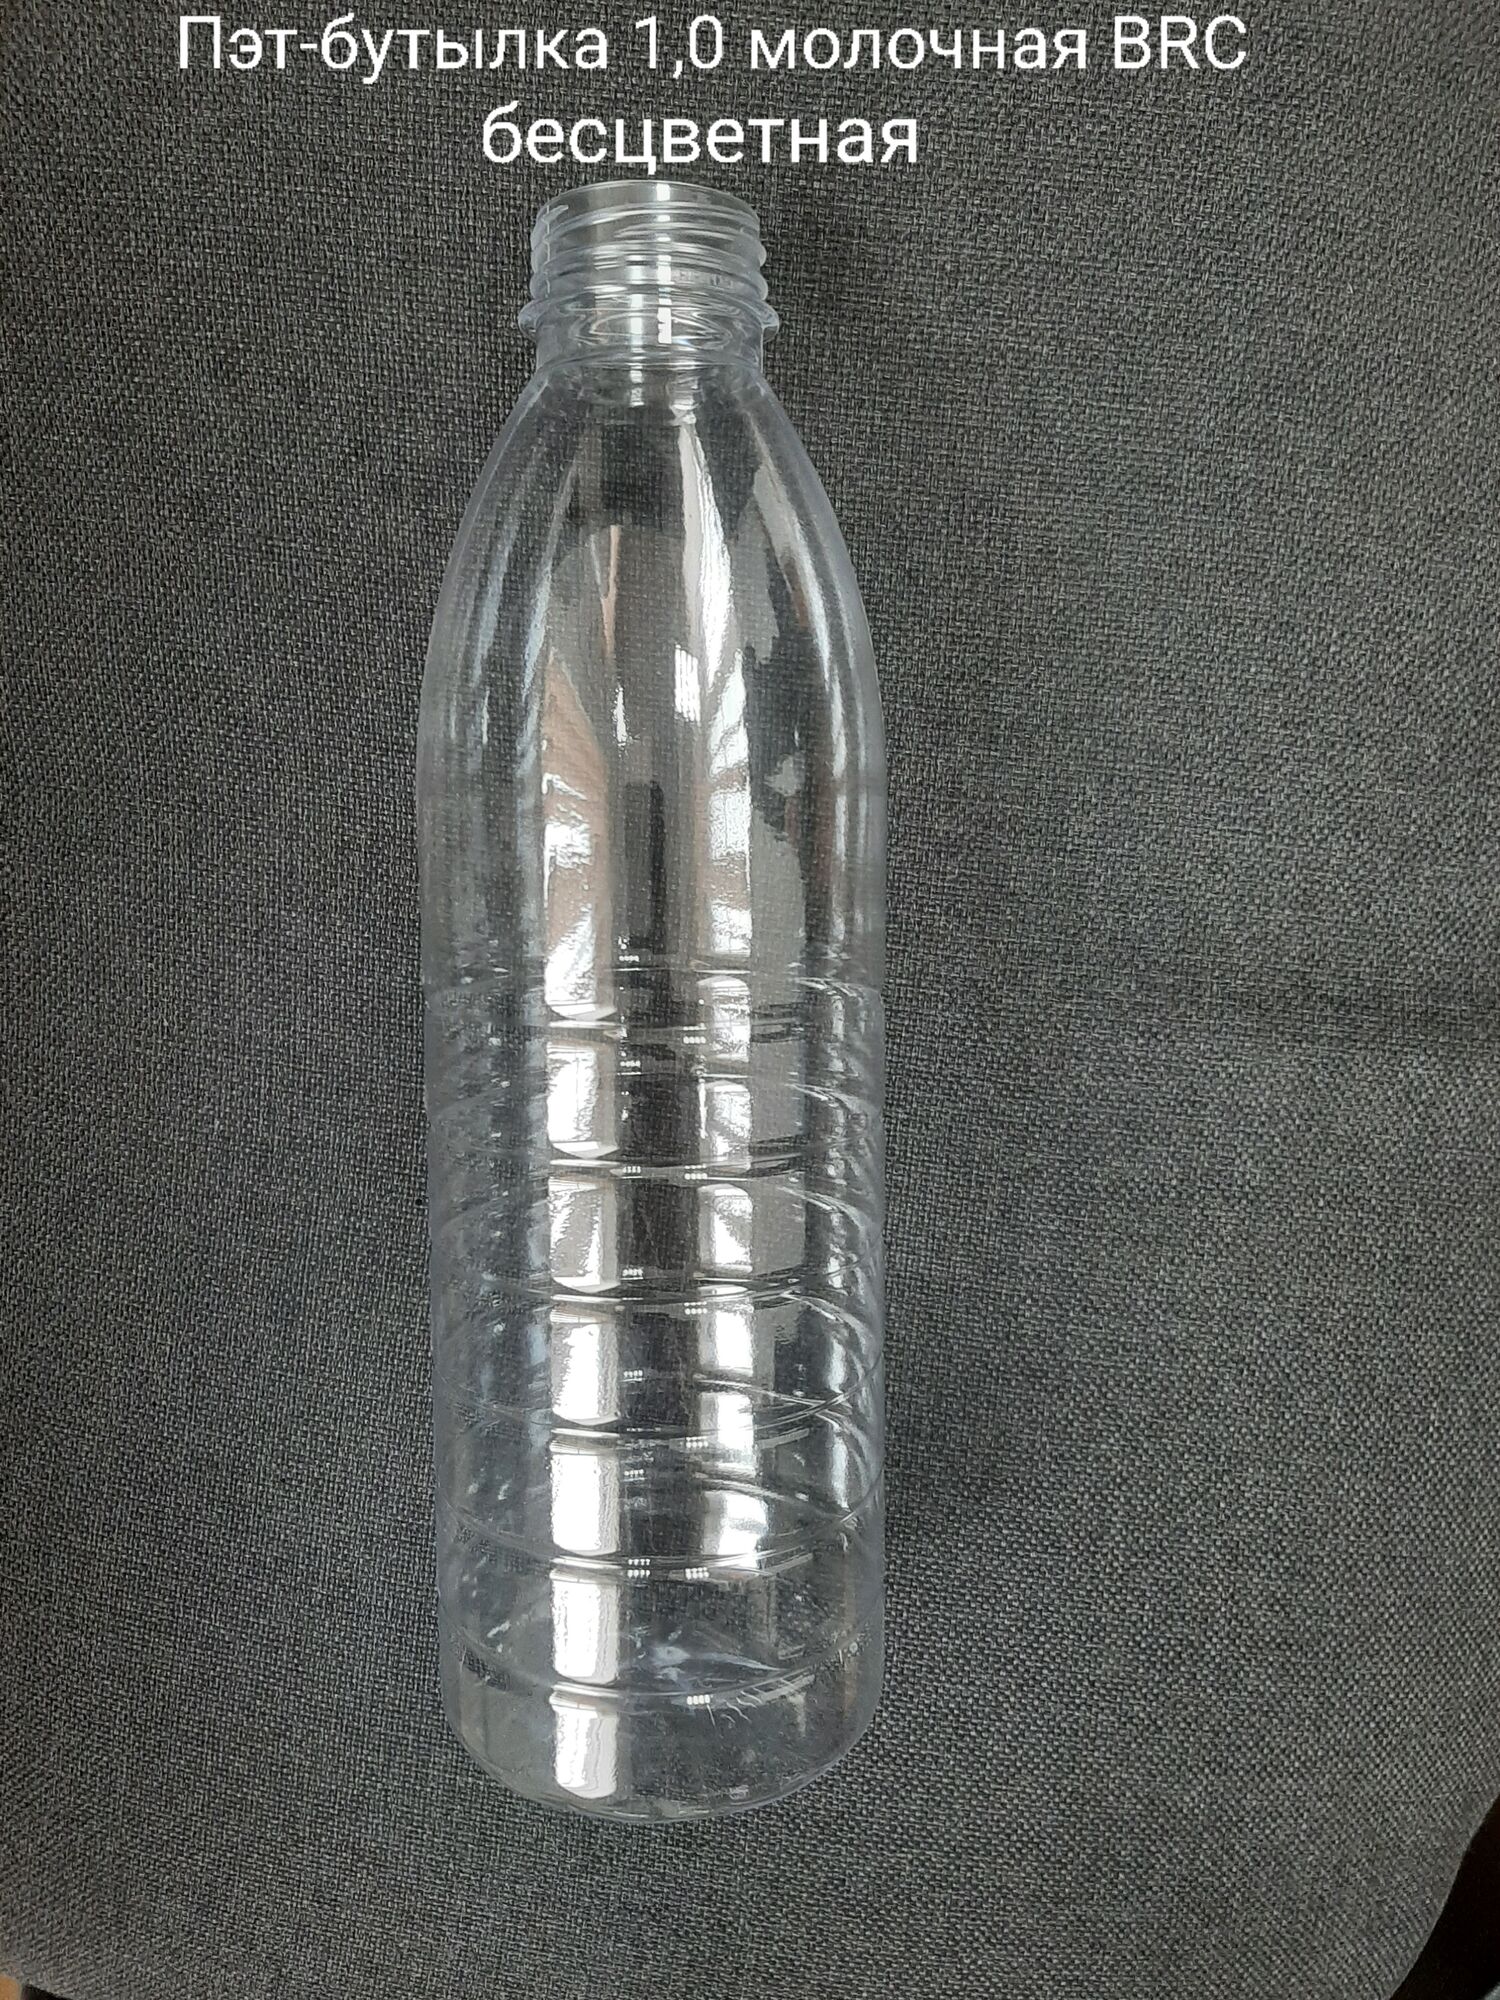 Пэт-бутылка 1,0 молочная BRC, бесцветная (120 шт в упаковке) вес 27 гр